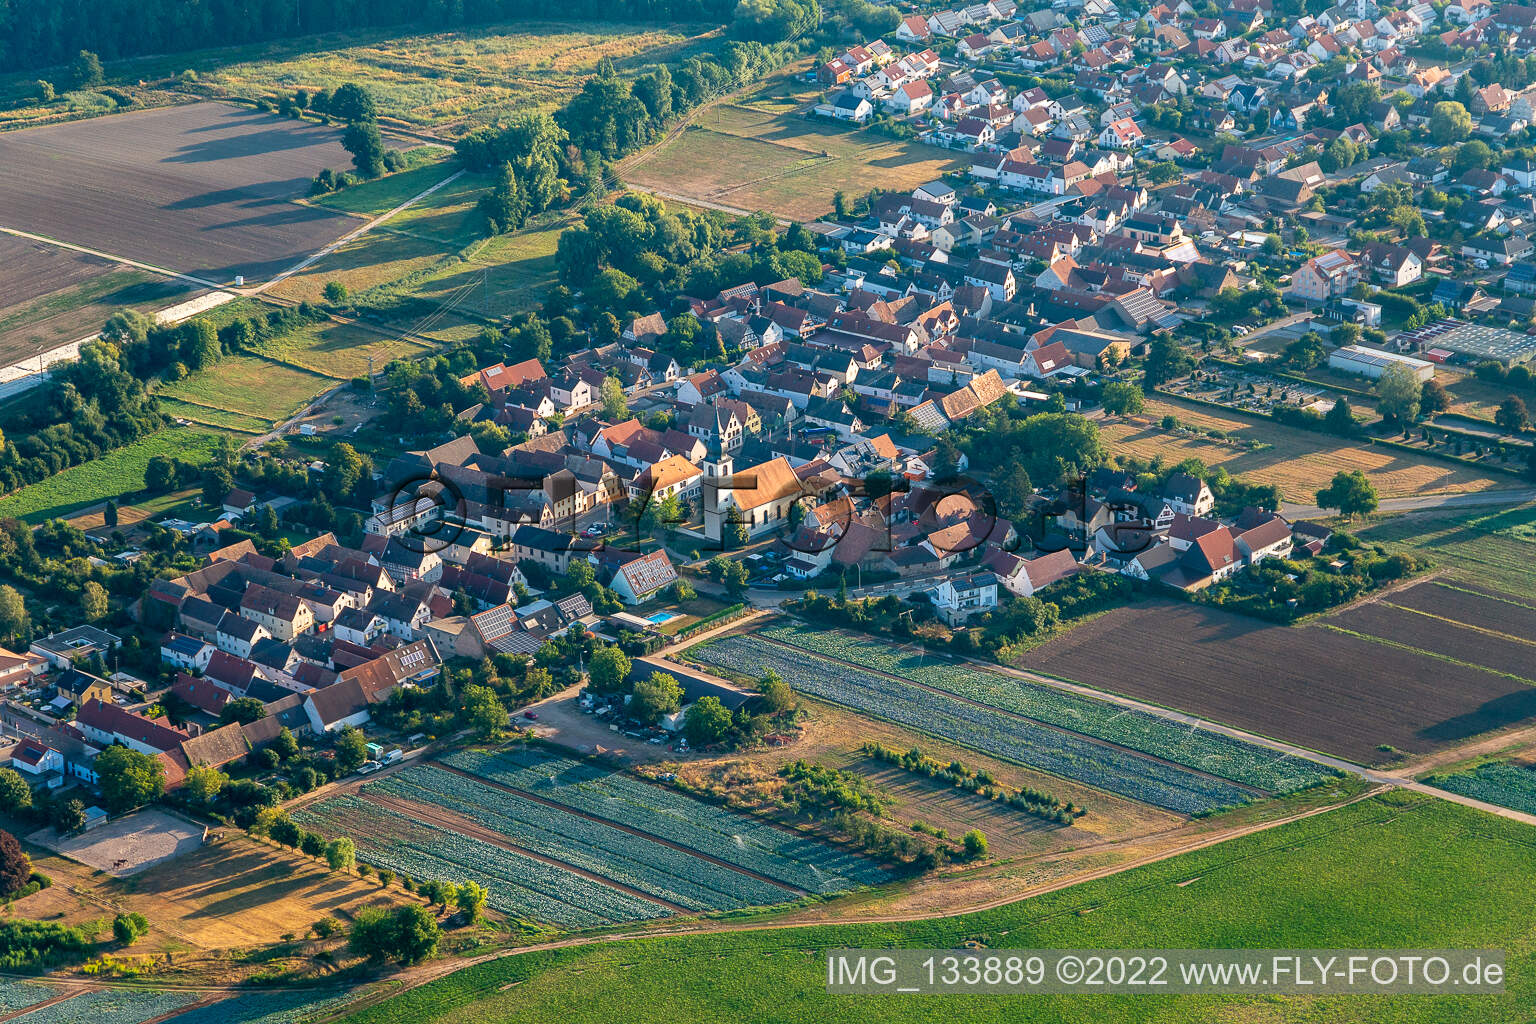 Freisbach im Bundesland Rheinland-Pfalz, Deutschland von der Drohne aus gesehen